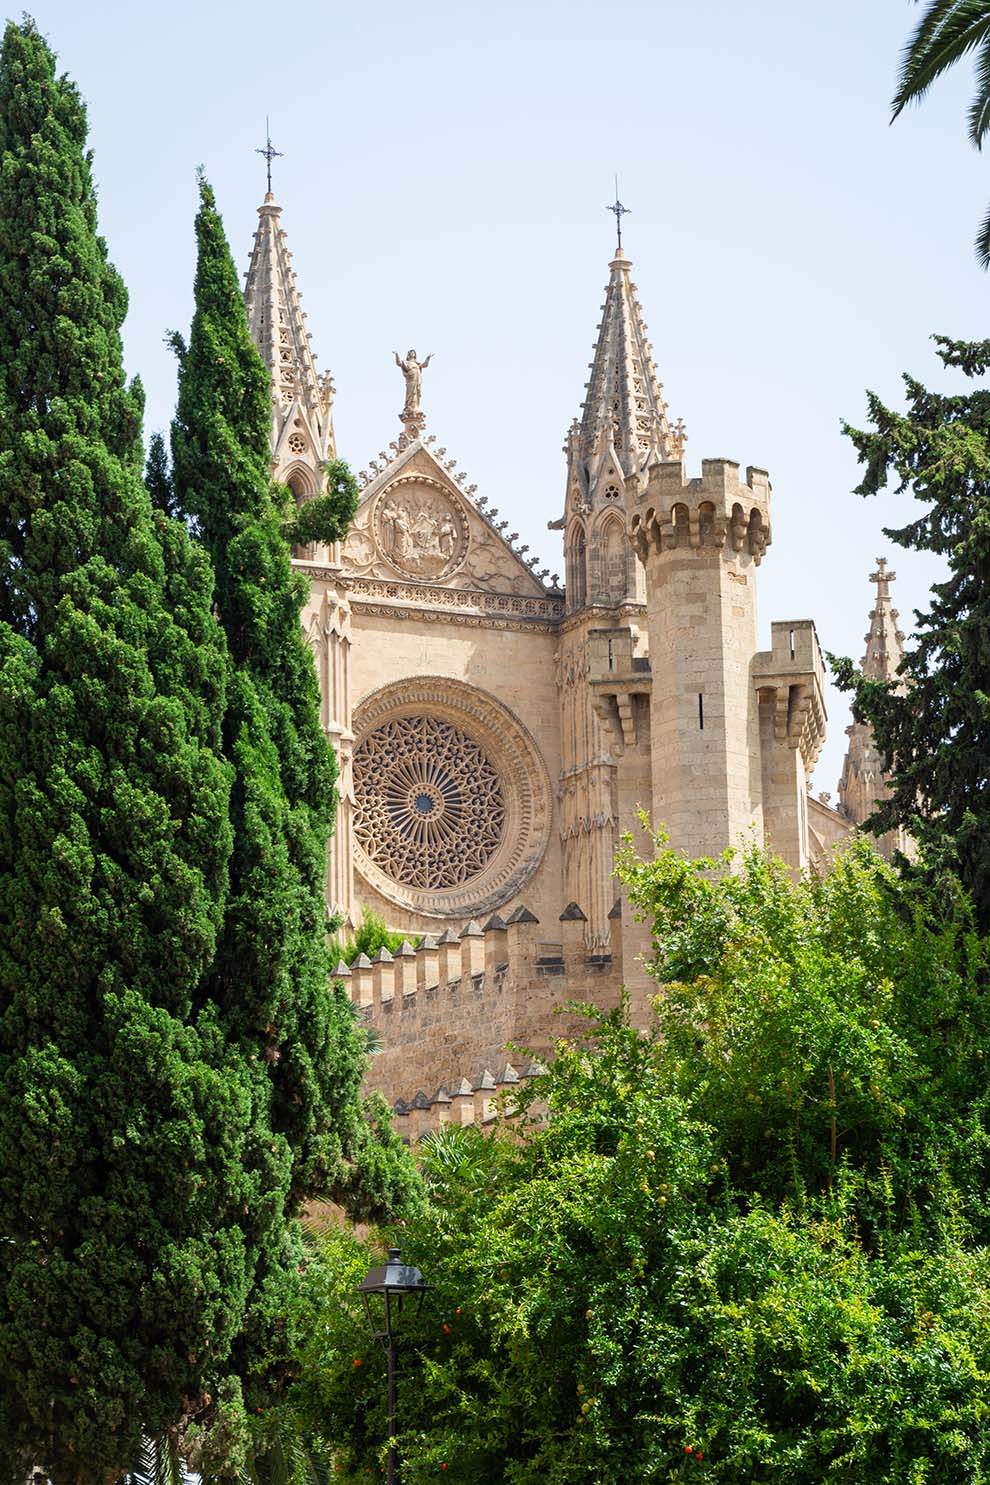 Ein Blick auf eine majestätische Kathedrale mit detaillierter gotischer Architektur, spitzen Türmen und einem großen Rosettenfenster, teilweise verdeckt von üppigen grünen Bäumen unter einem klaren Himmel während eines Segelurlaubs.